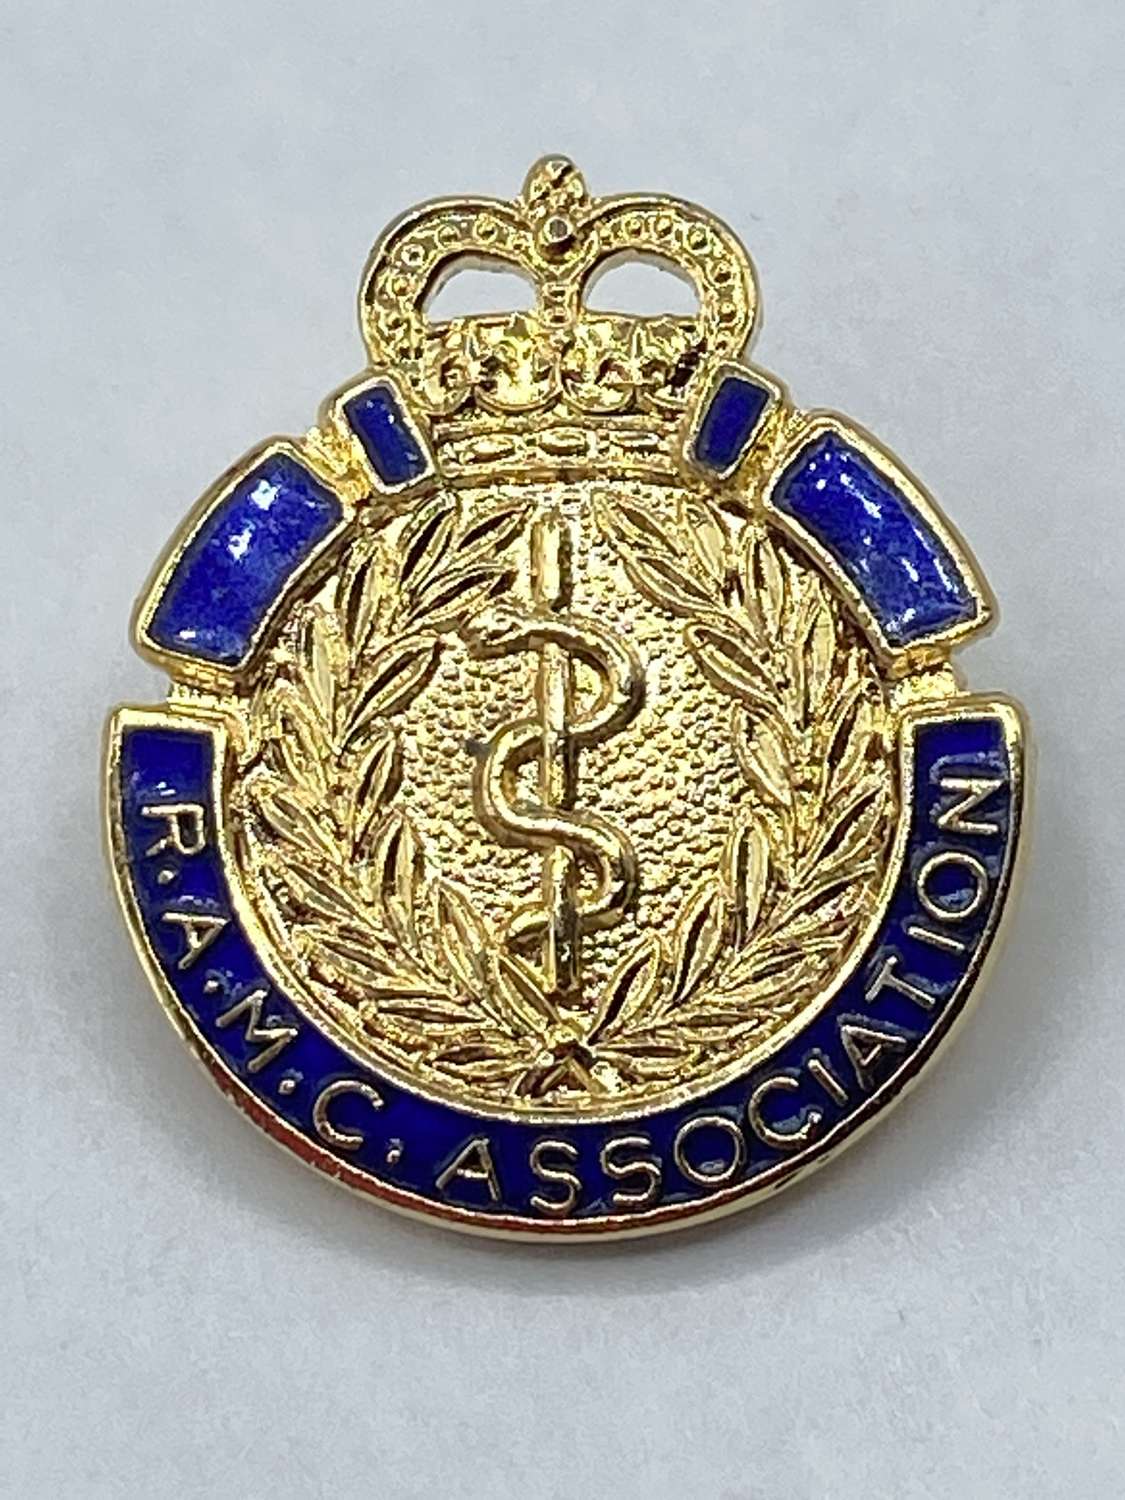 Post WW2 Royal Army Medical Corps Association R.A.M.C.A Enamel Badge